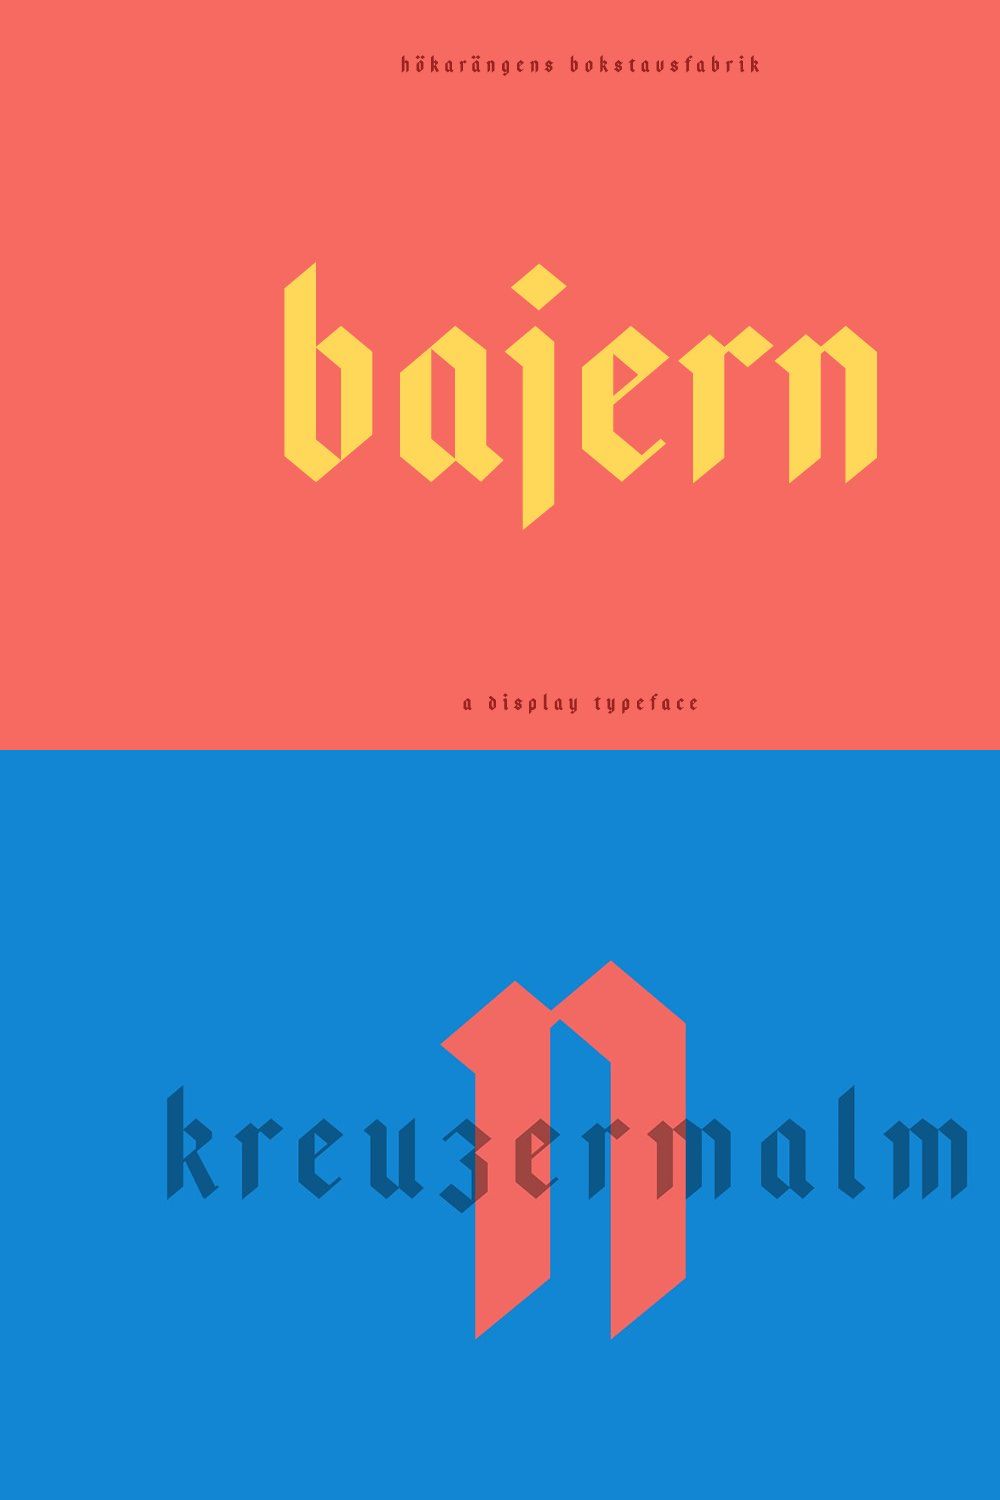 Bajern — A modern fraktur pinterest preview image.